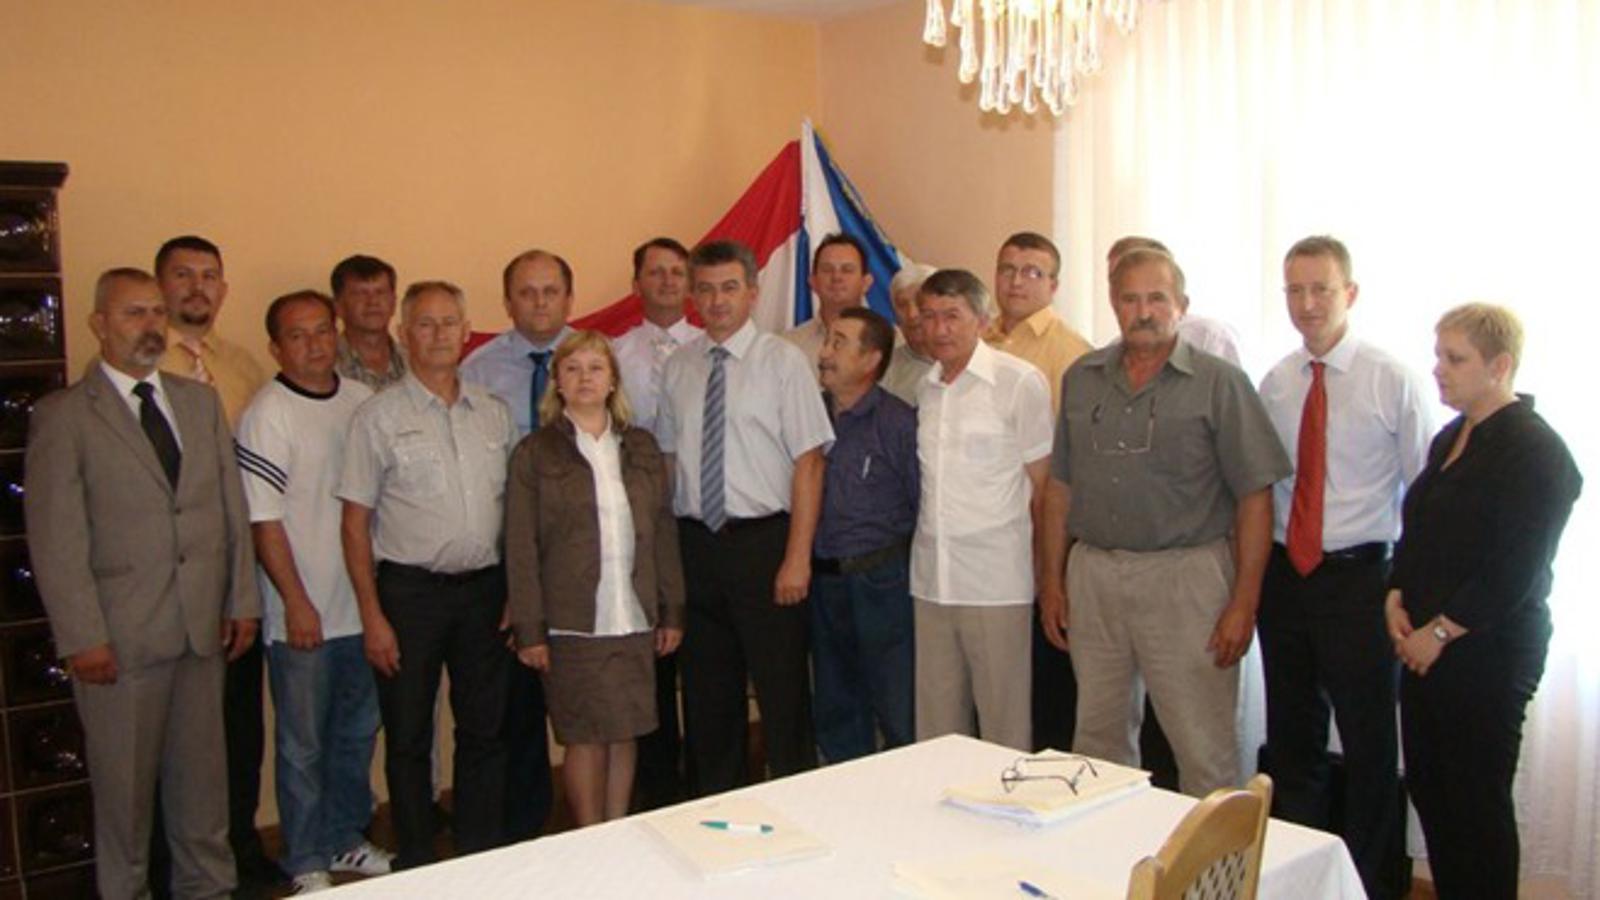 Općinsko vijeće u Starom Petrovom Selu konstituirano 17. lipnja 2013